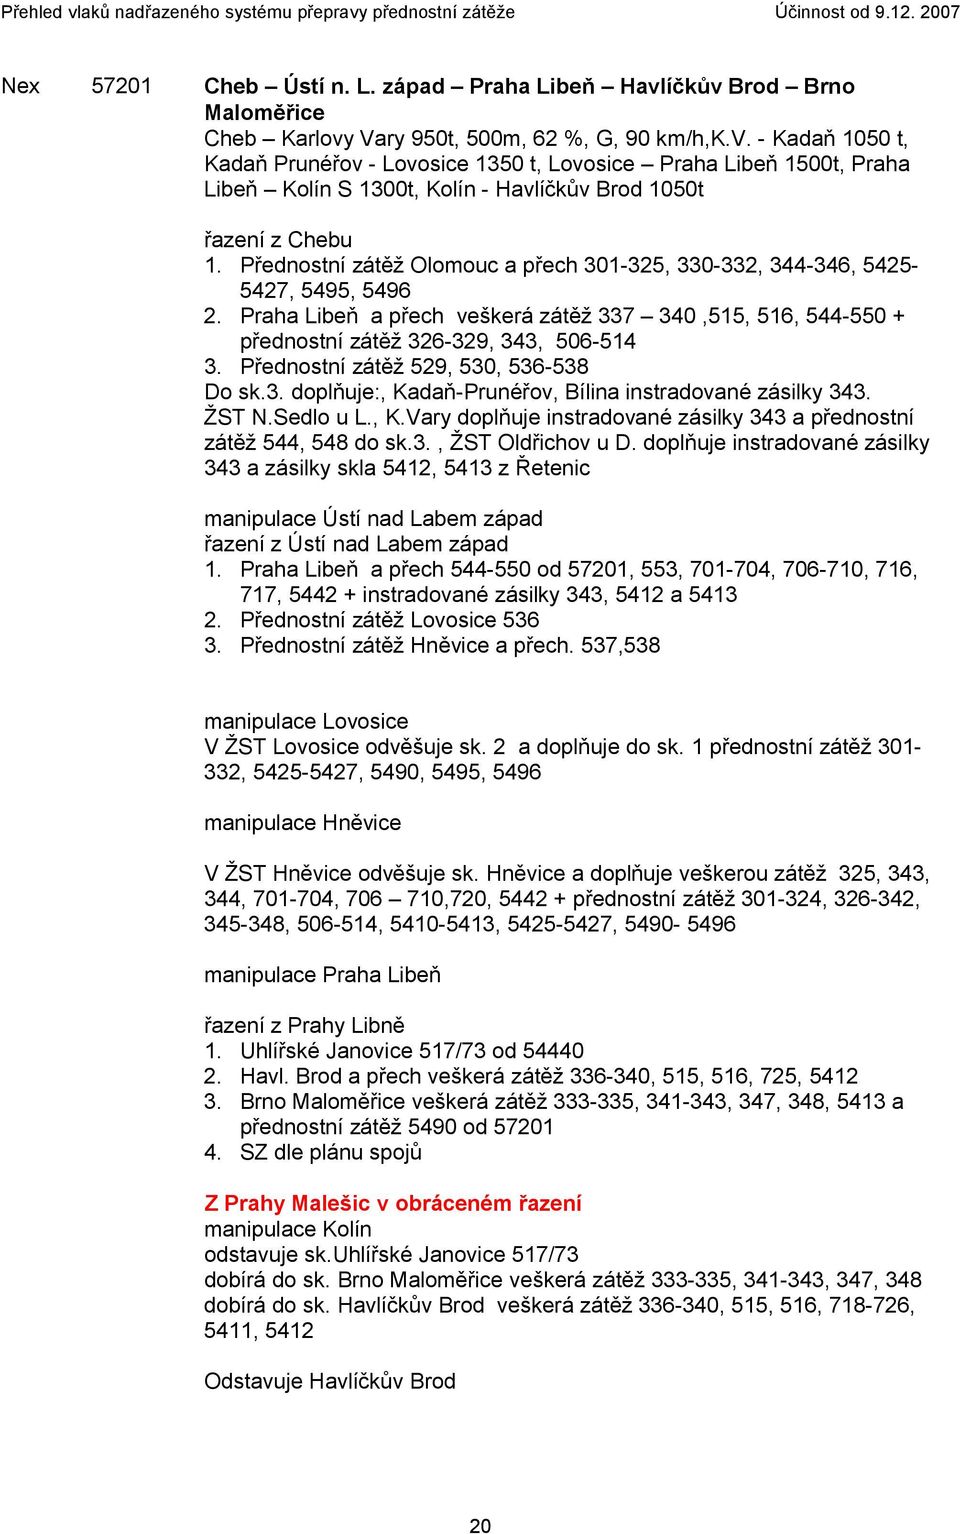 Přednostní zátěž Olomouc a přech 301-325, 330-332, 344-346, 5425-5427, 5495, 5496 2. Praha Libeň a přech veškerá zátěž 337 340,515, 516, 544-550 + přednostní zátěž 326-329, 343, 506-514 3.